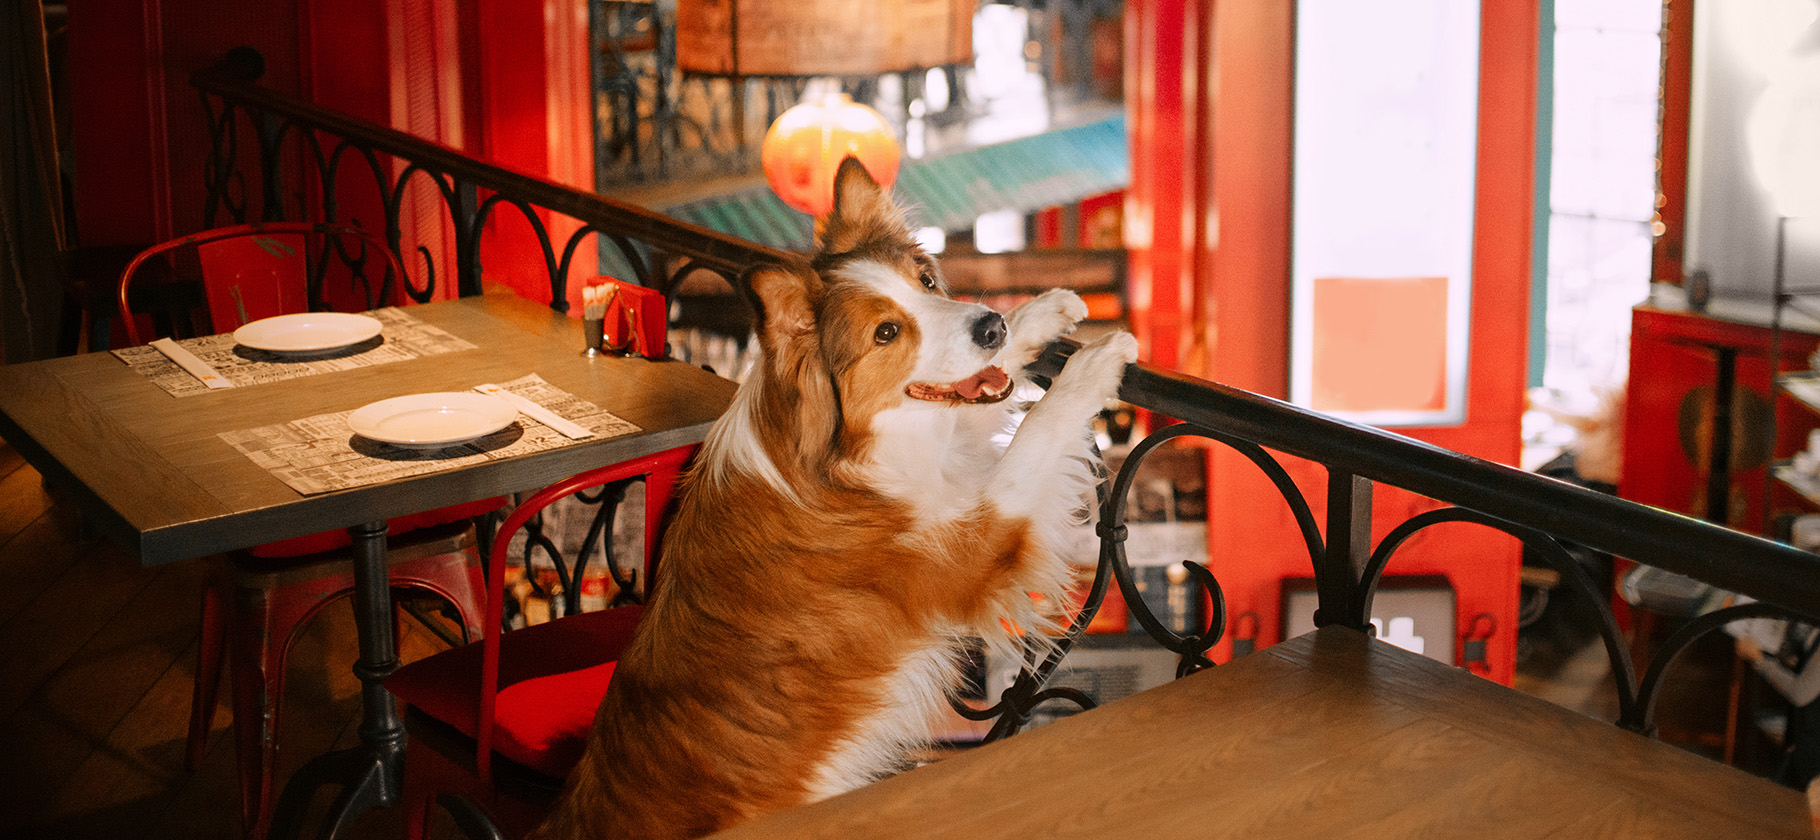 15 ресторанов в Москве, где рады гостям с собаками